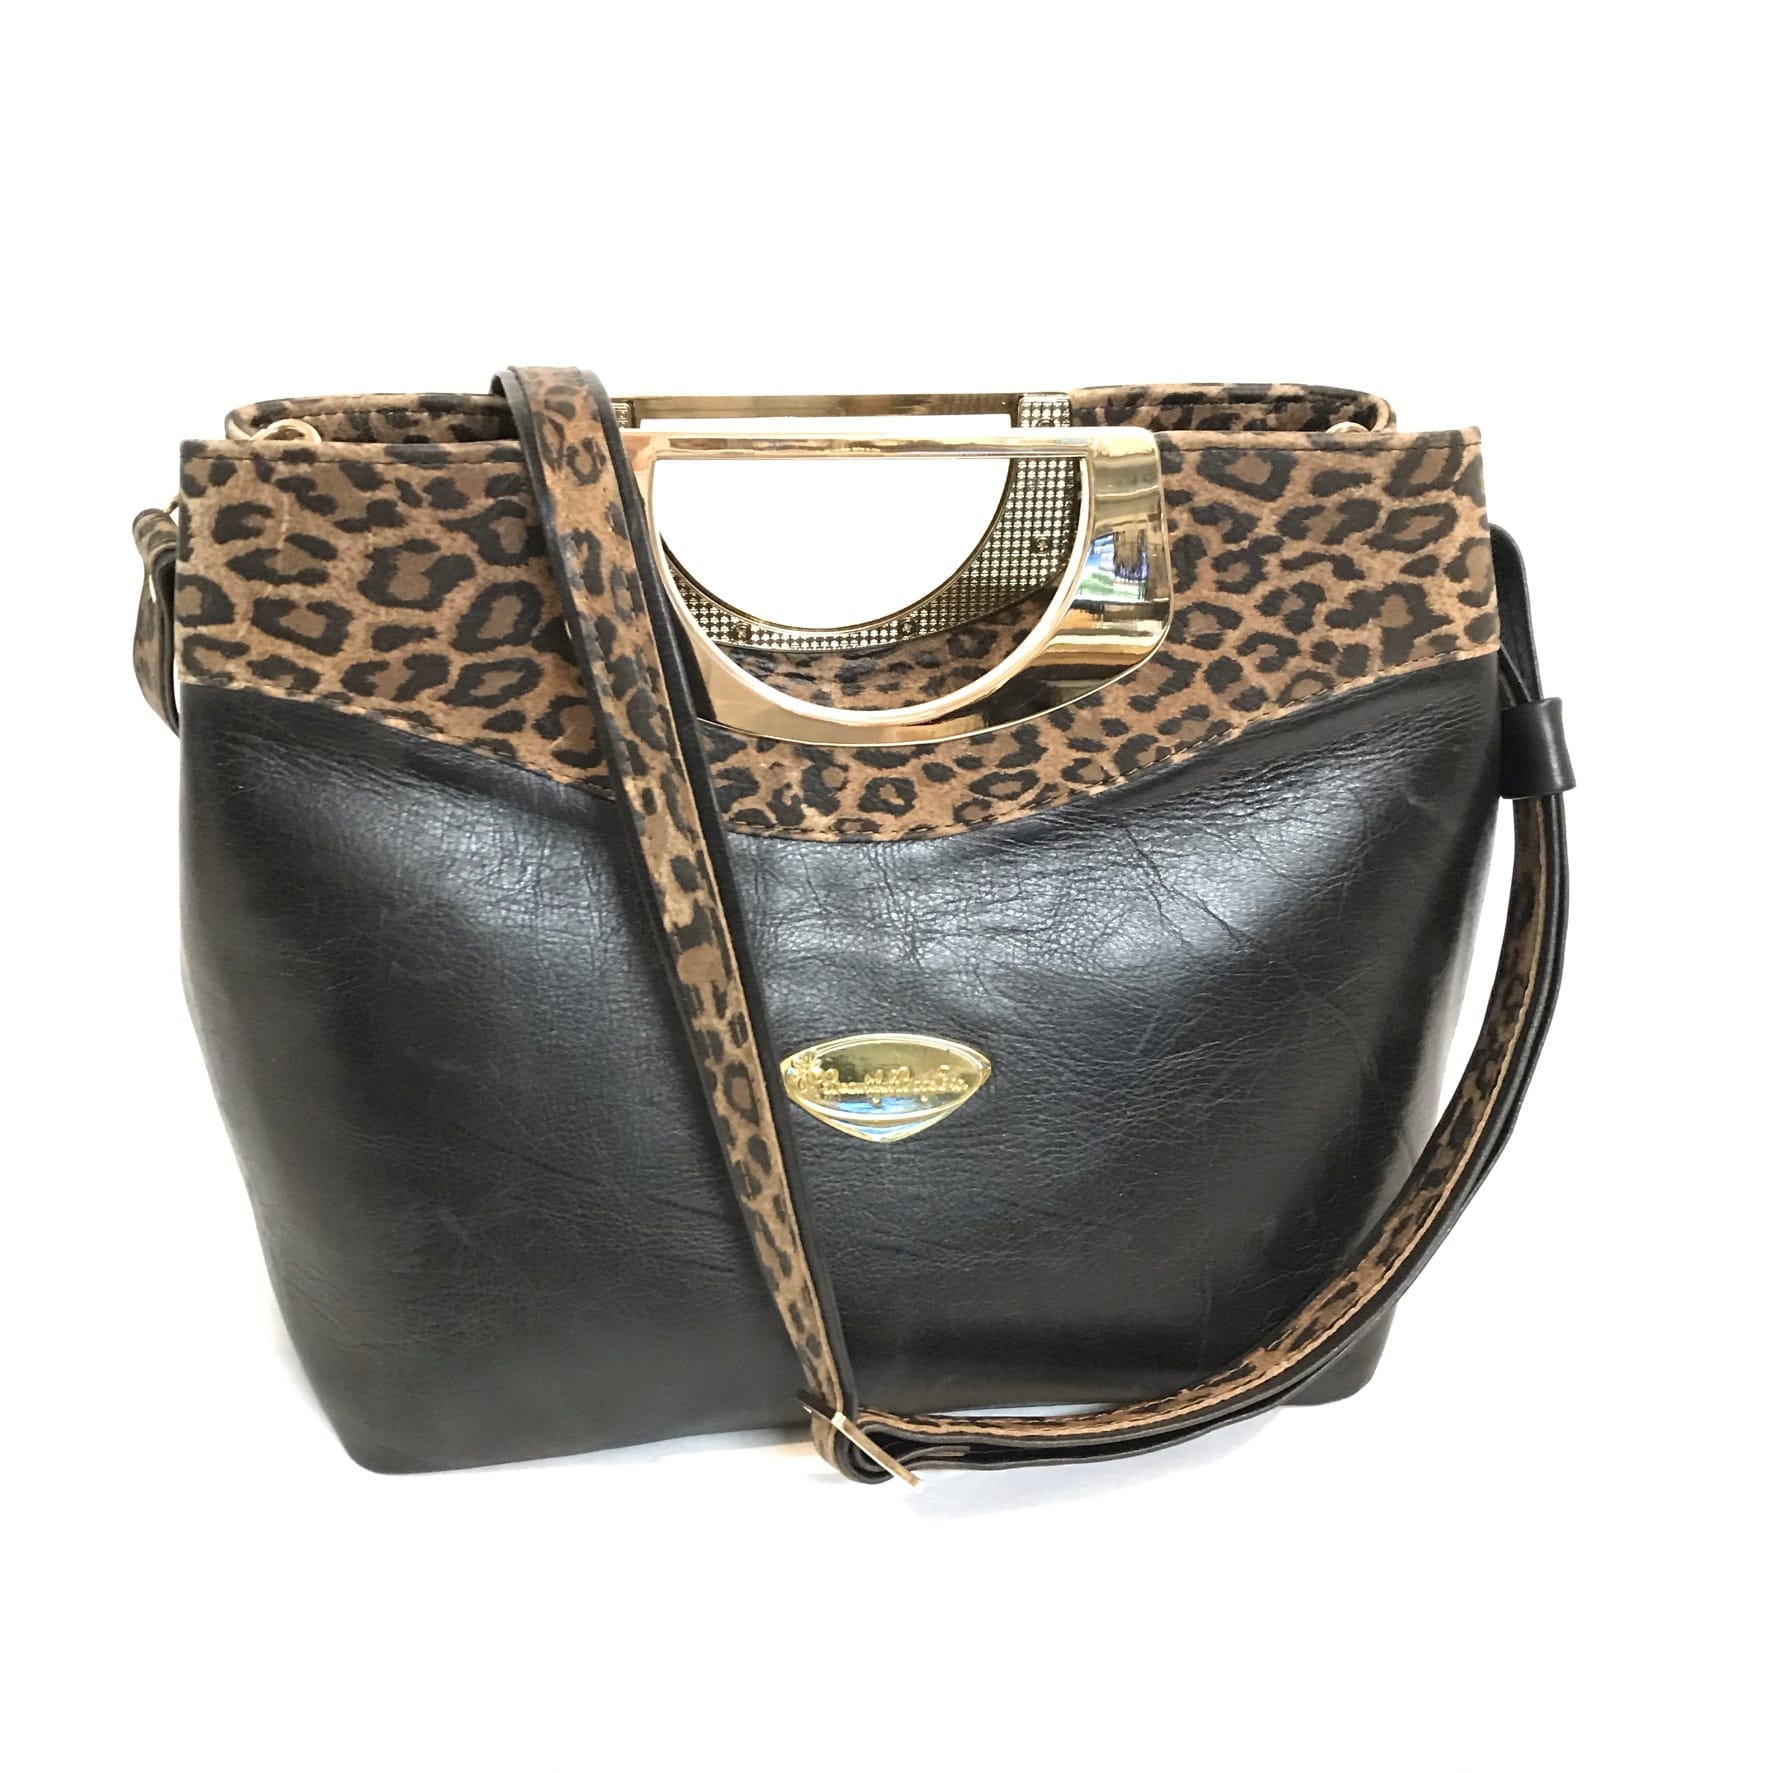 Fifth Avenue Black & Leopard Leather purse 